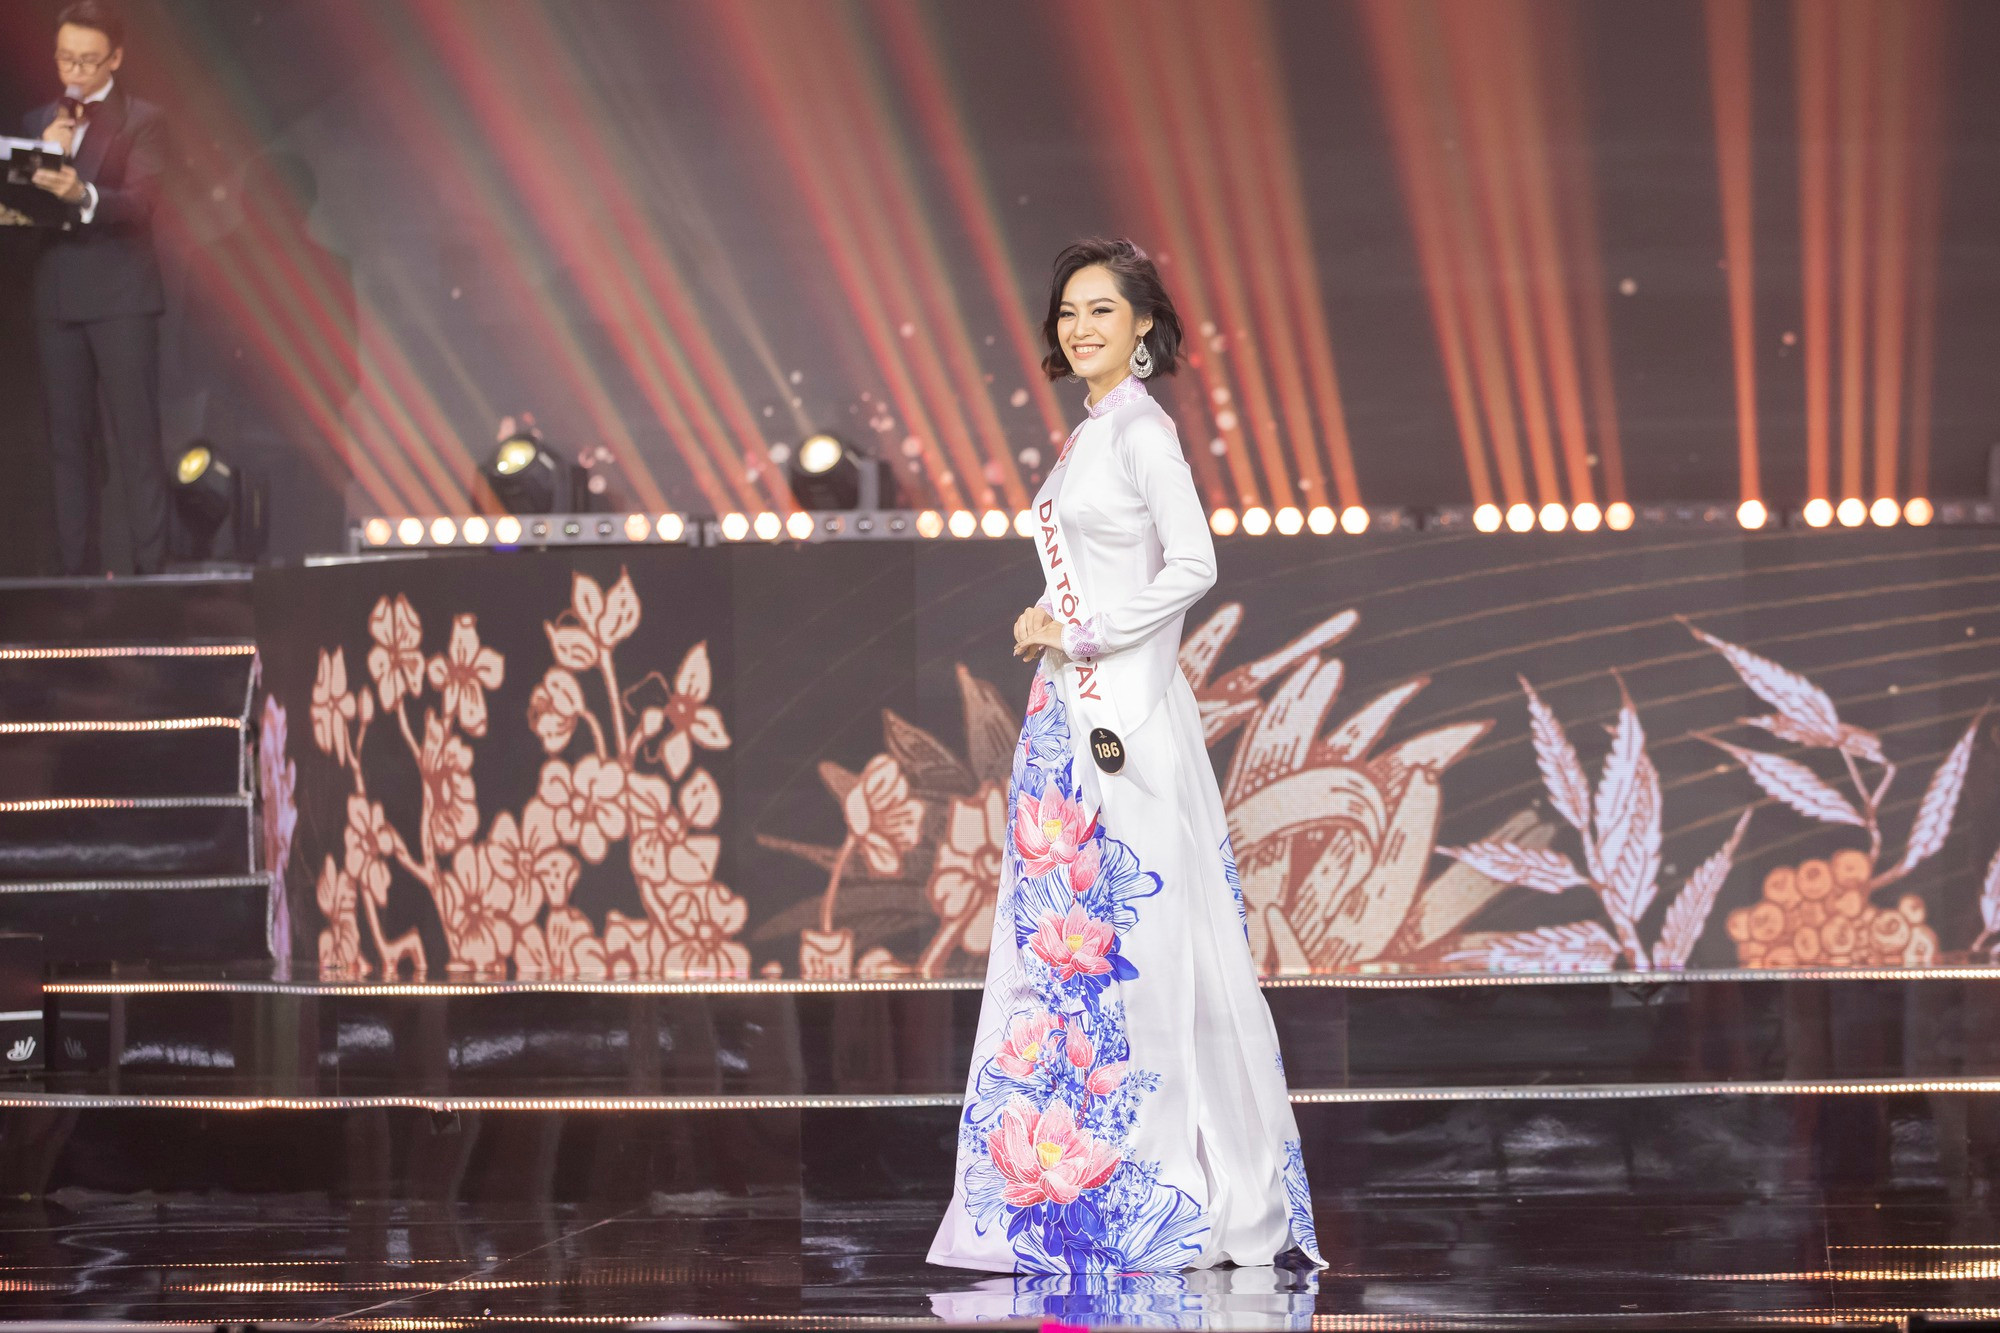 Nhan sắc xinh đẹp của Nông Thúy Hằng - mỹ nhân Tày đầu tiên đăng quang Hoa hậu các dân tộc Việt Nam 2022 - Ảnh 3.